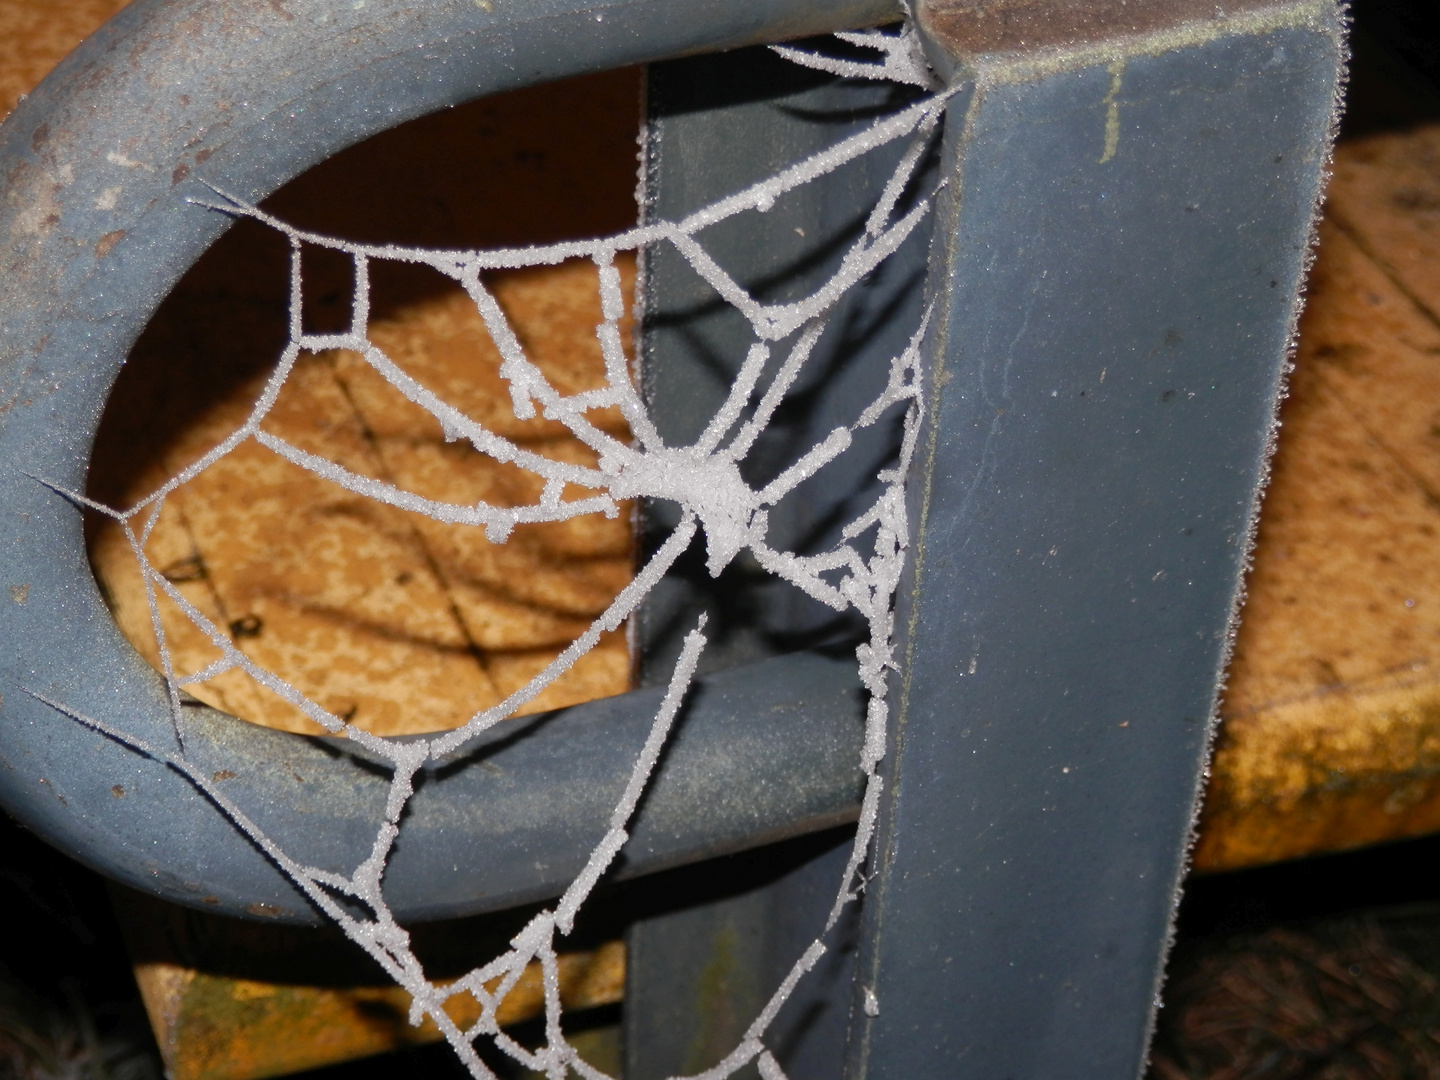 Ein Spinnennetz im Winter - wie in Zuckerguß getaucht